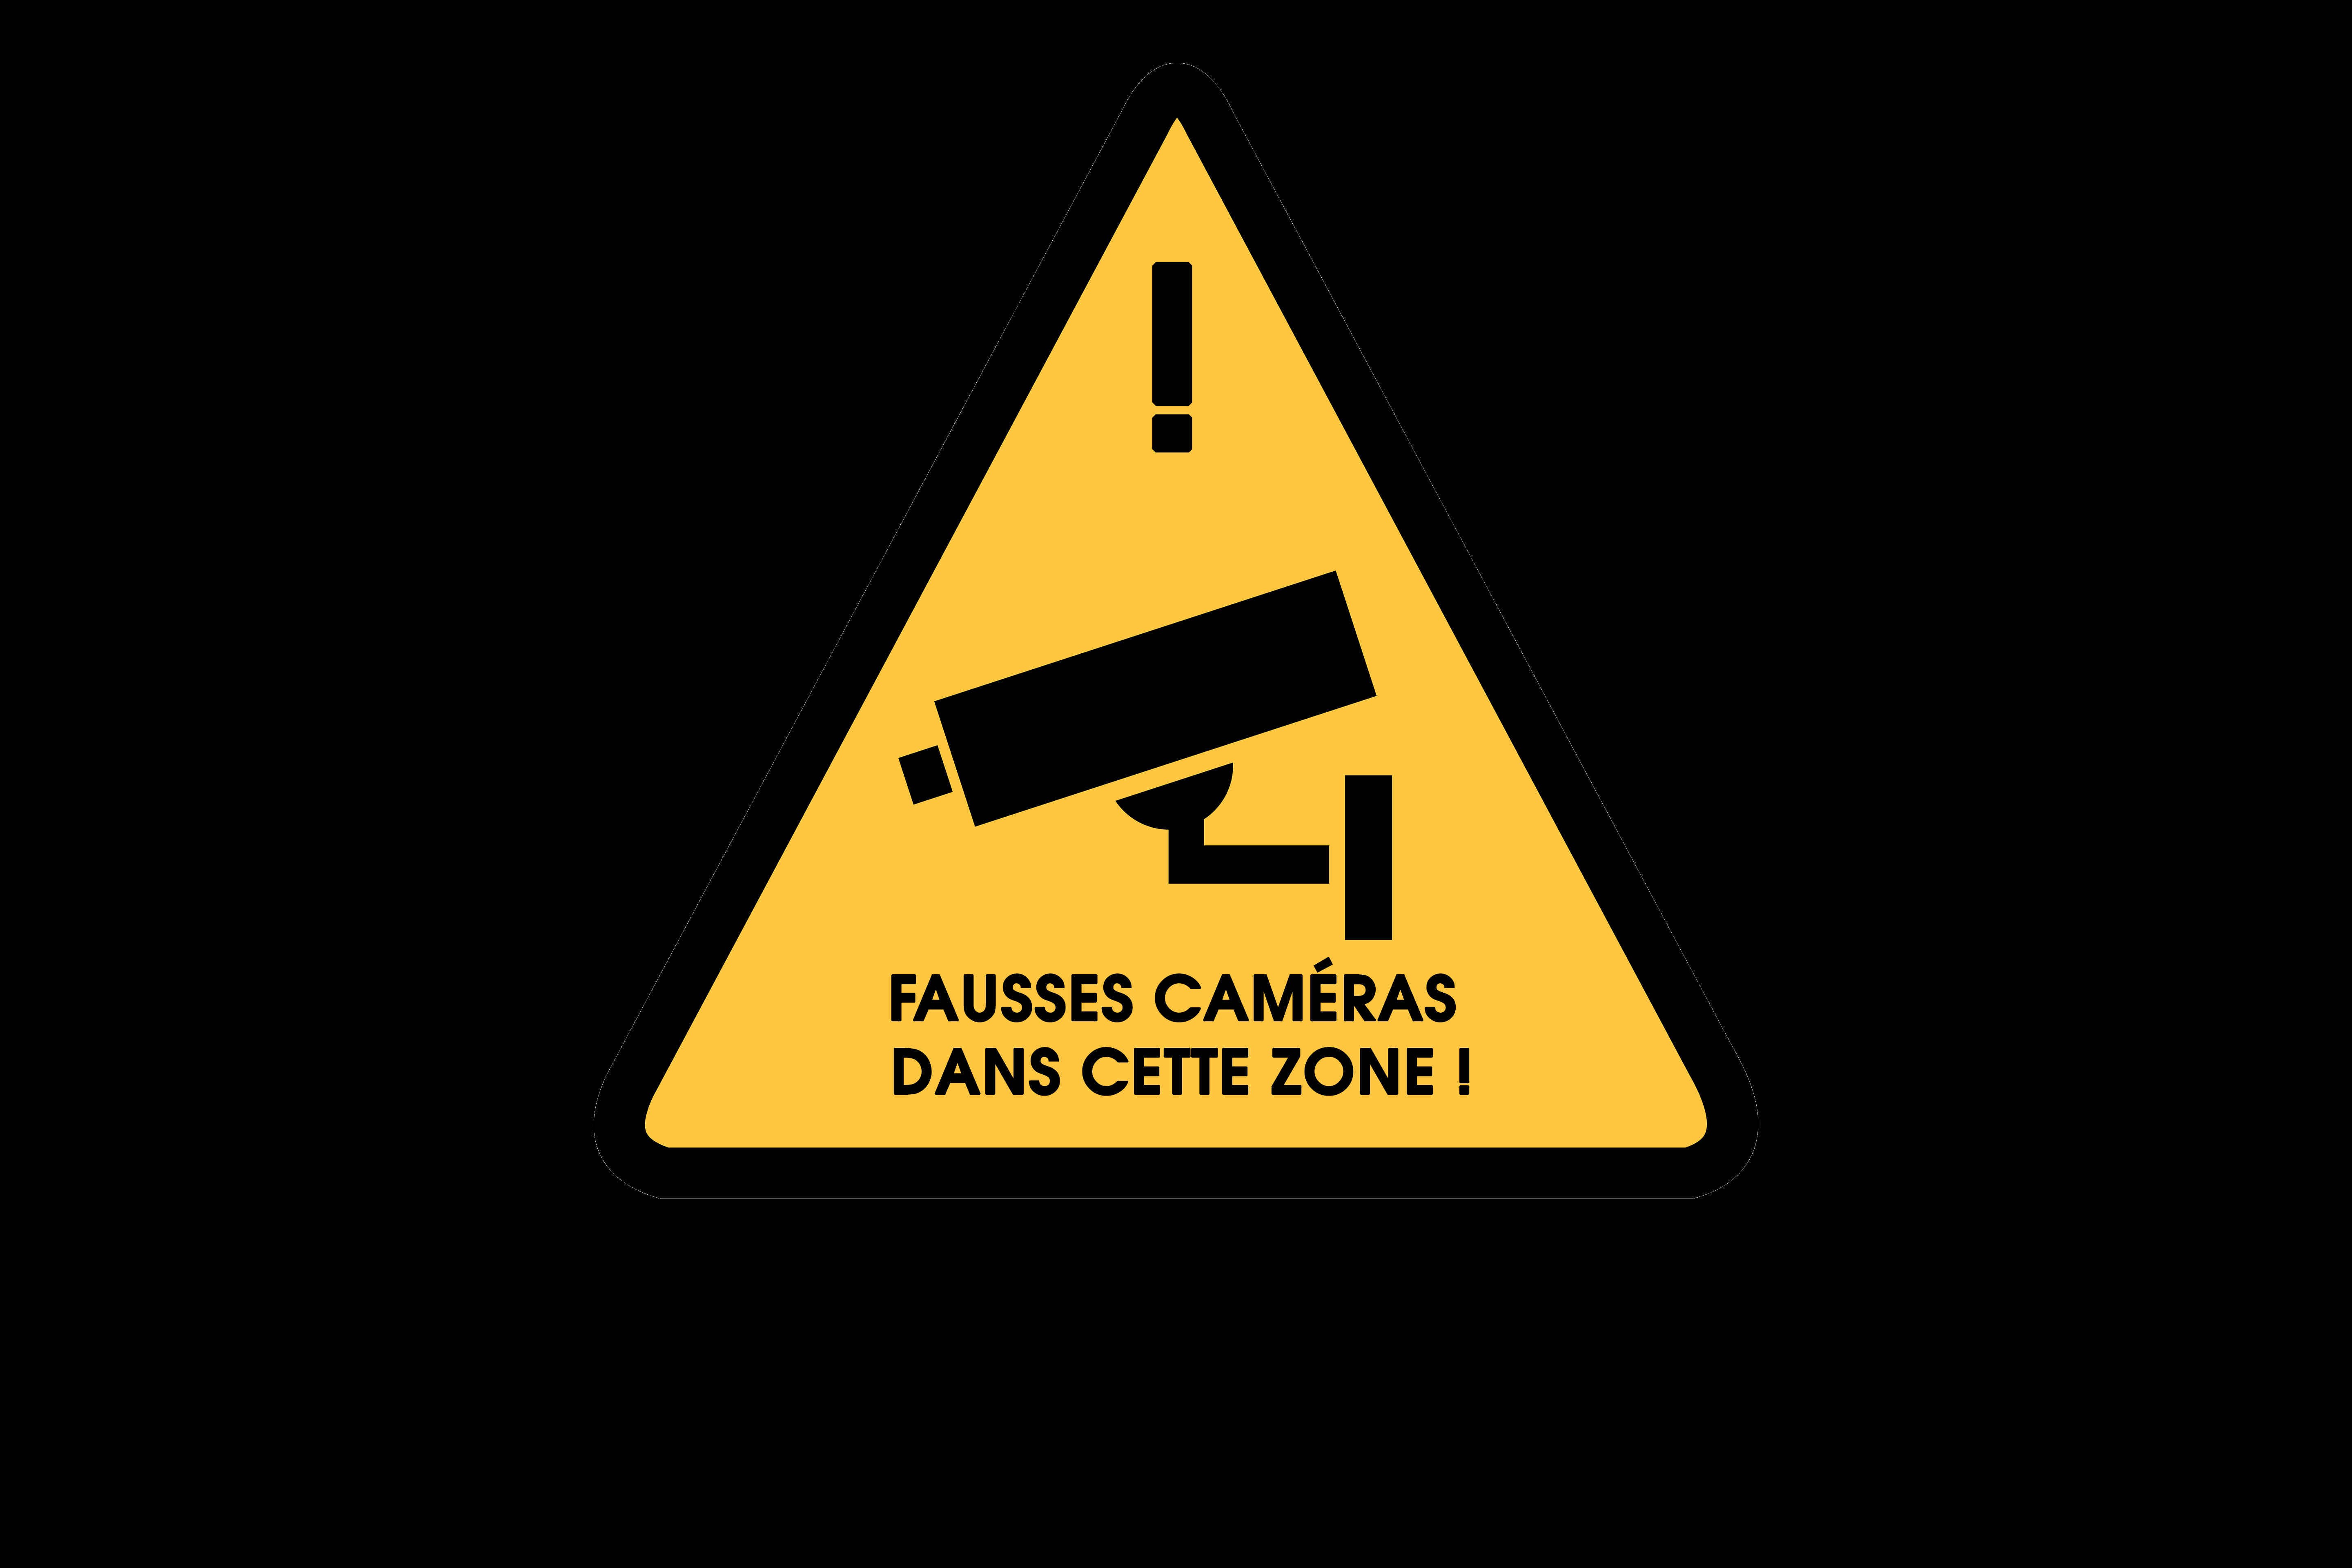 Le danger d'acheter et installer des caméras de surveillance factices